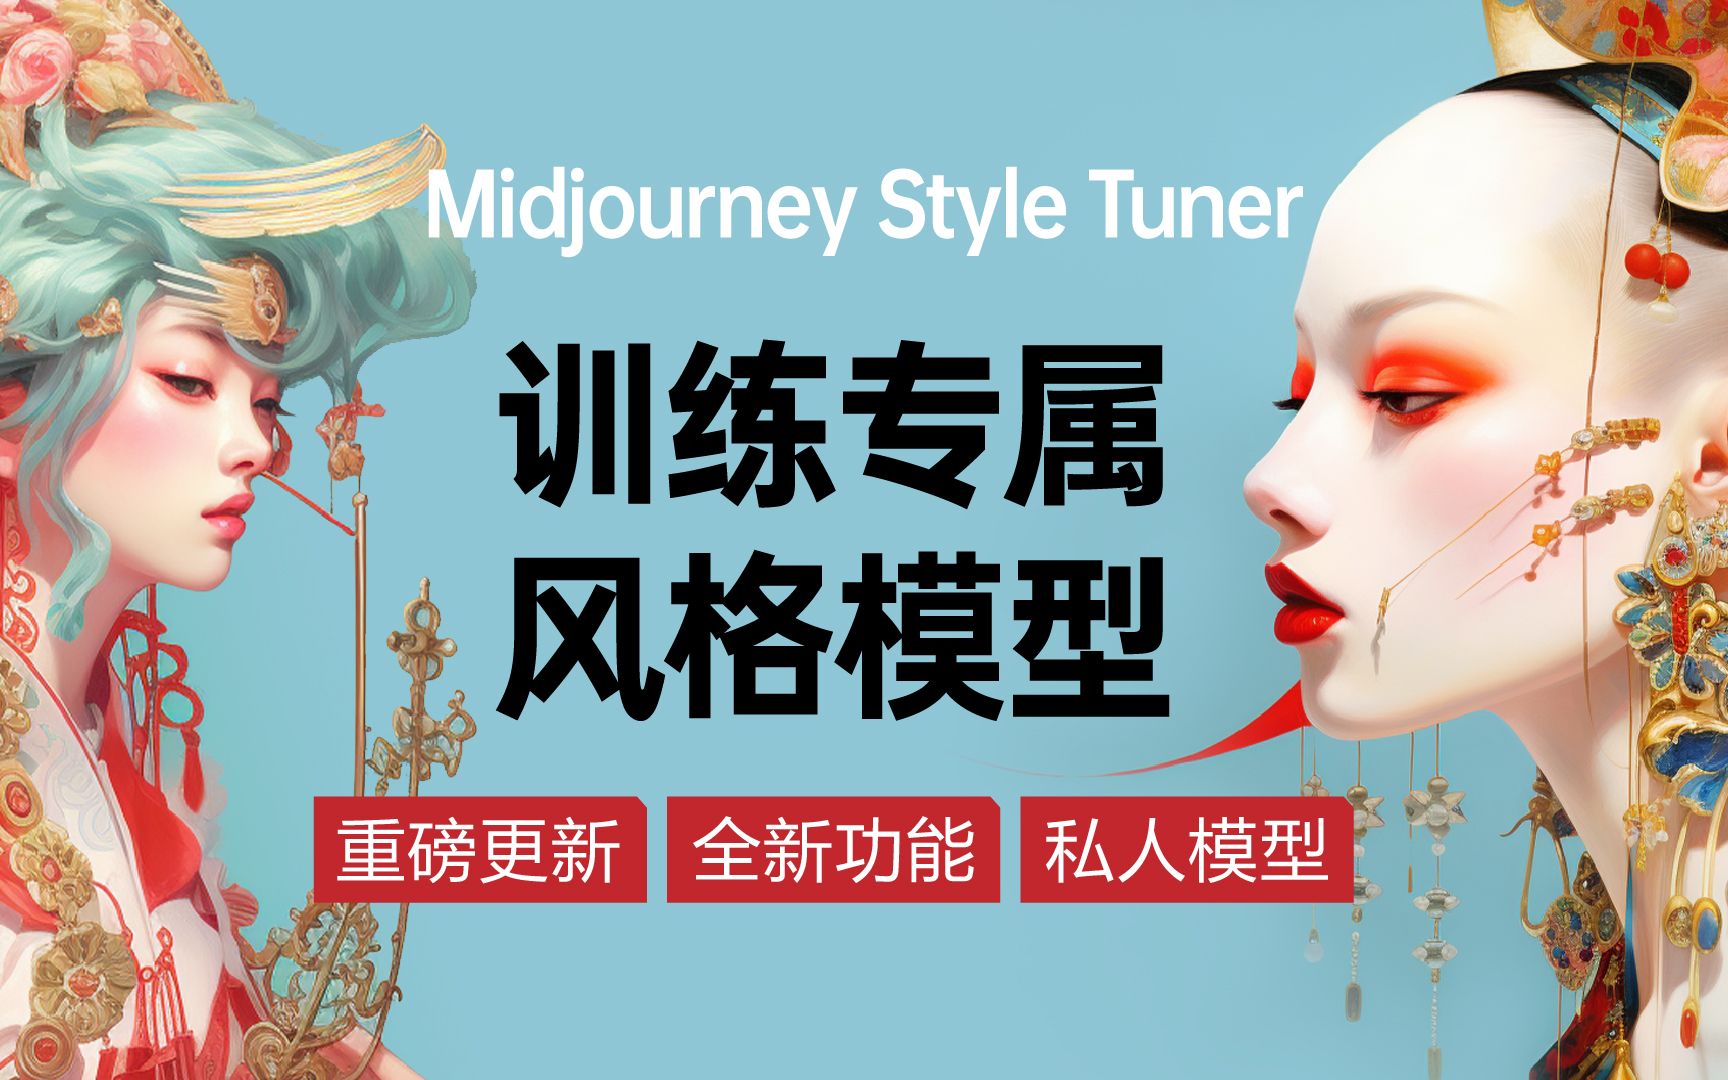 Midjourney也可以训练风格模型了！最新功能tuner必看+专属风格代码！